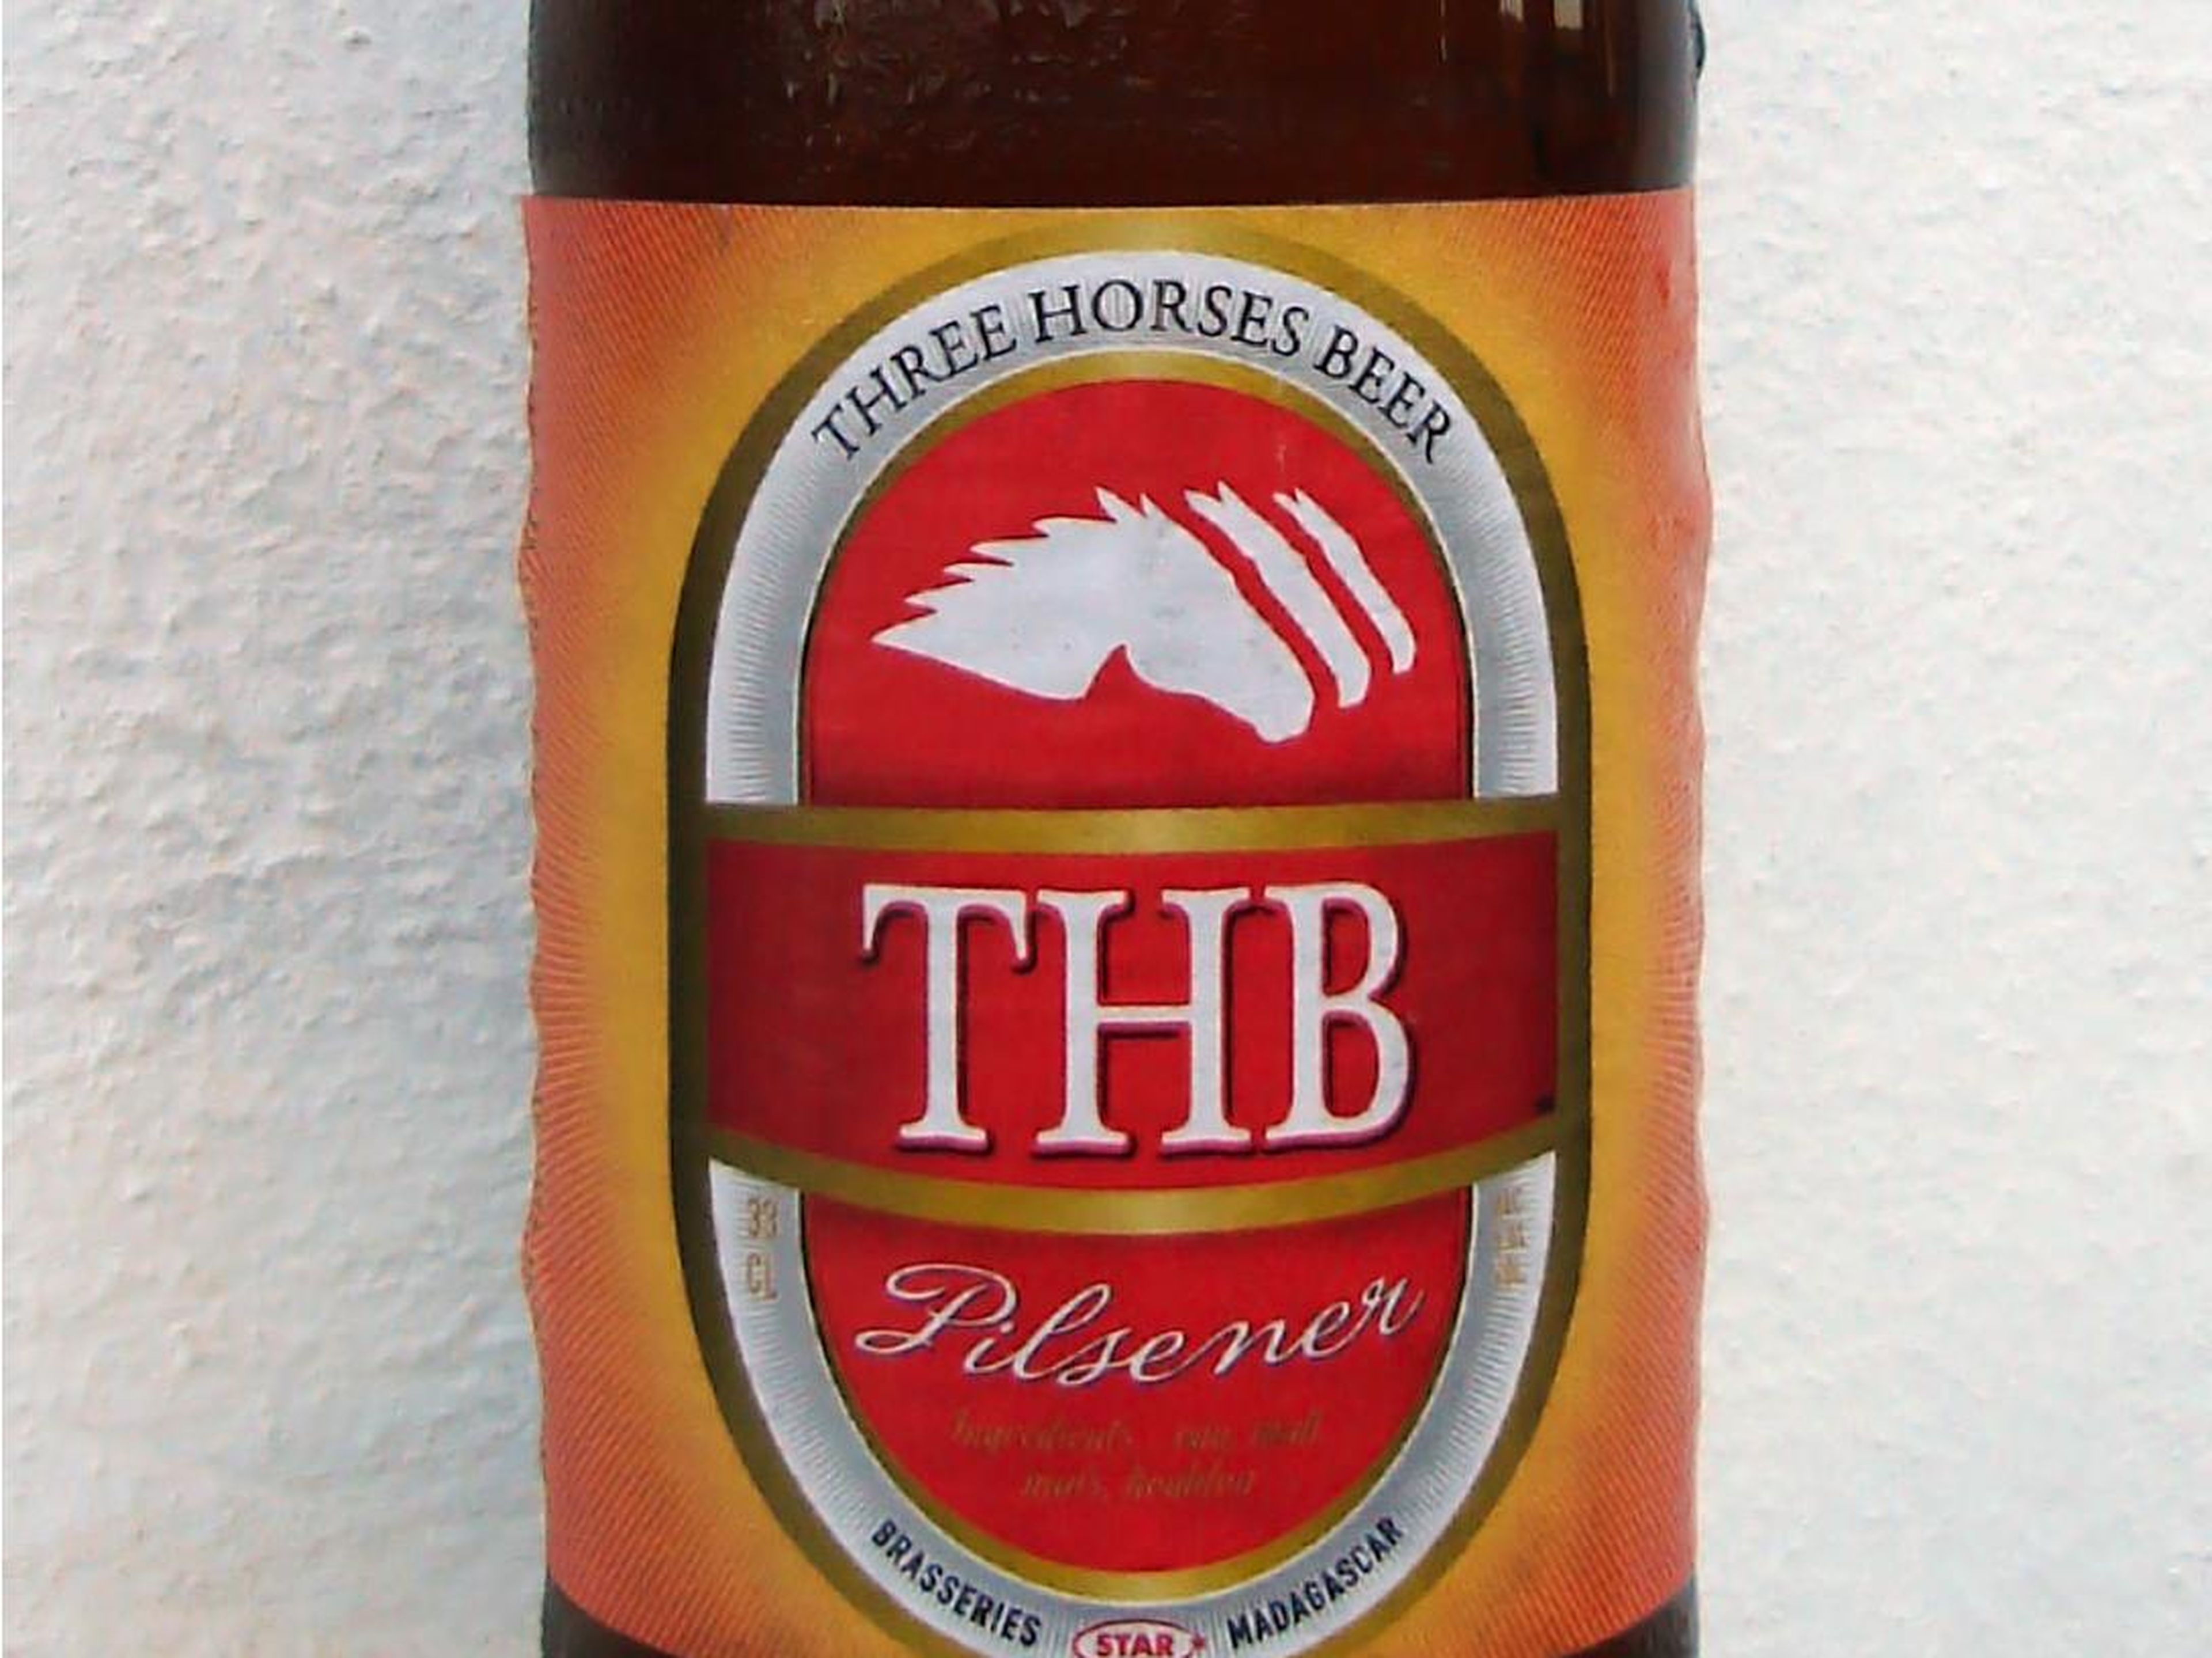 La cerveza que más se vende en Madagascar es la Three Horses.